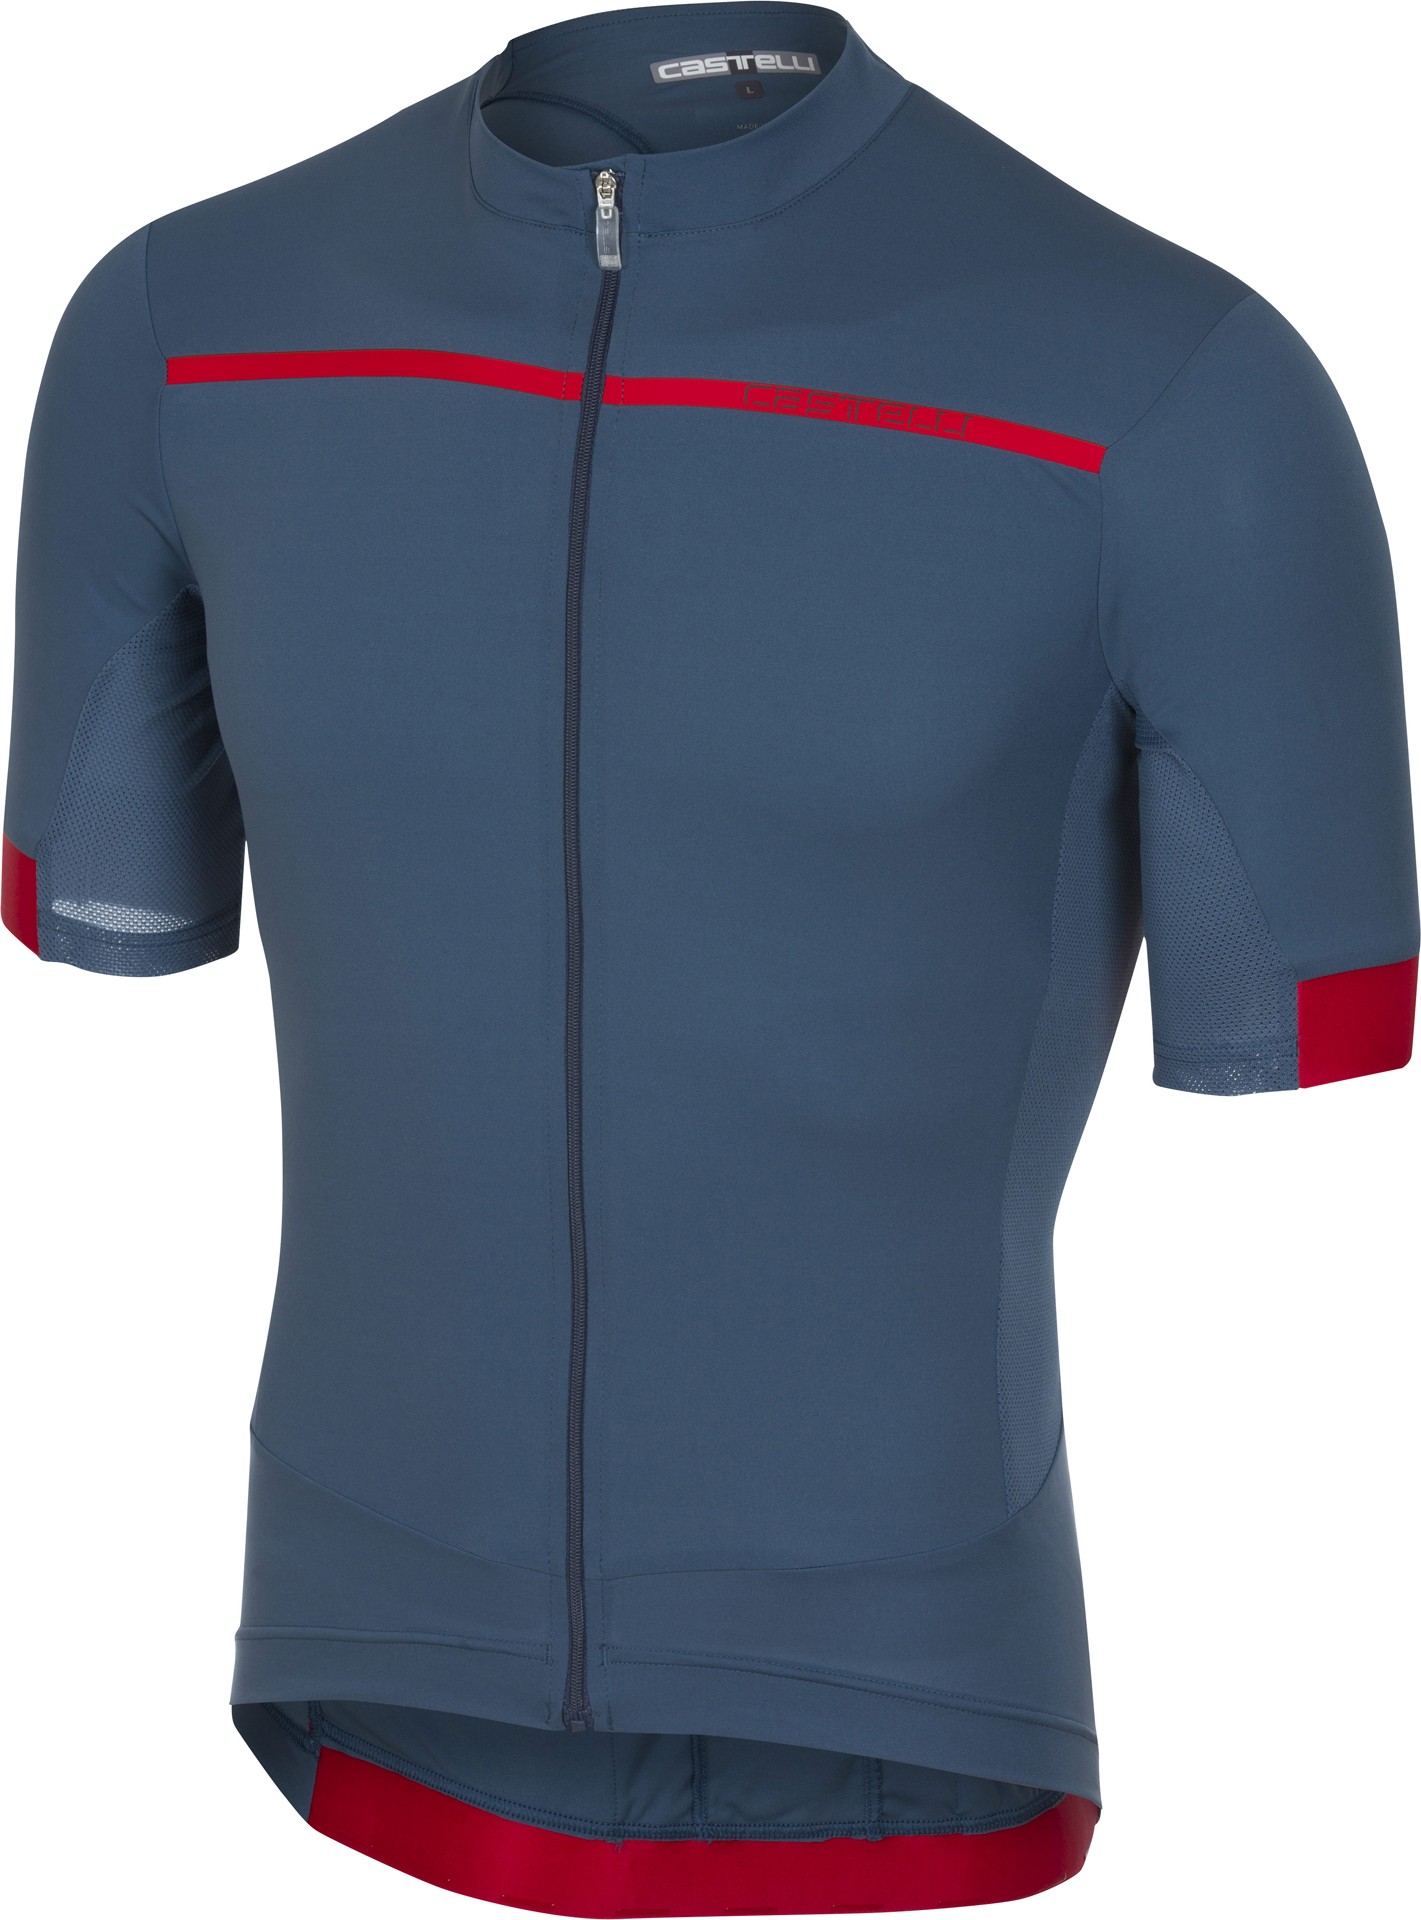 Castelli forza pro maillot de cyclisme manches courtes light steel bleu